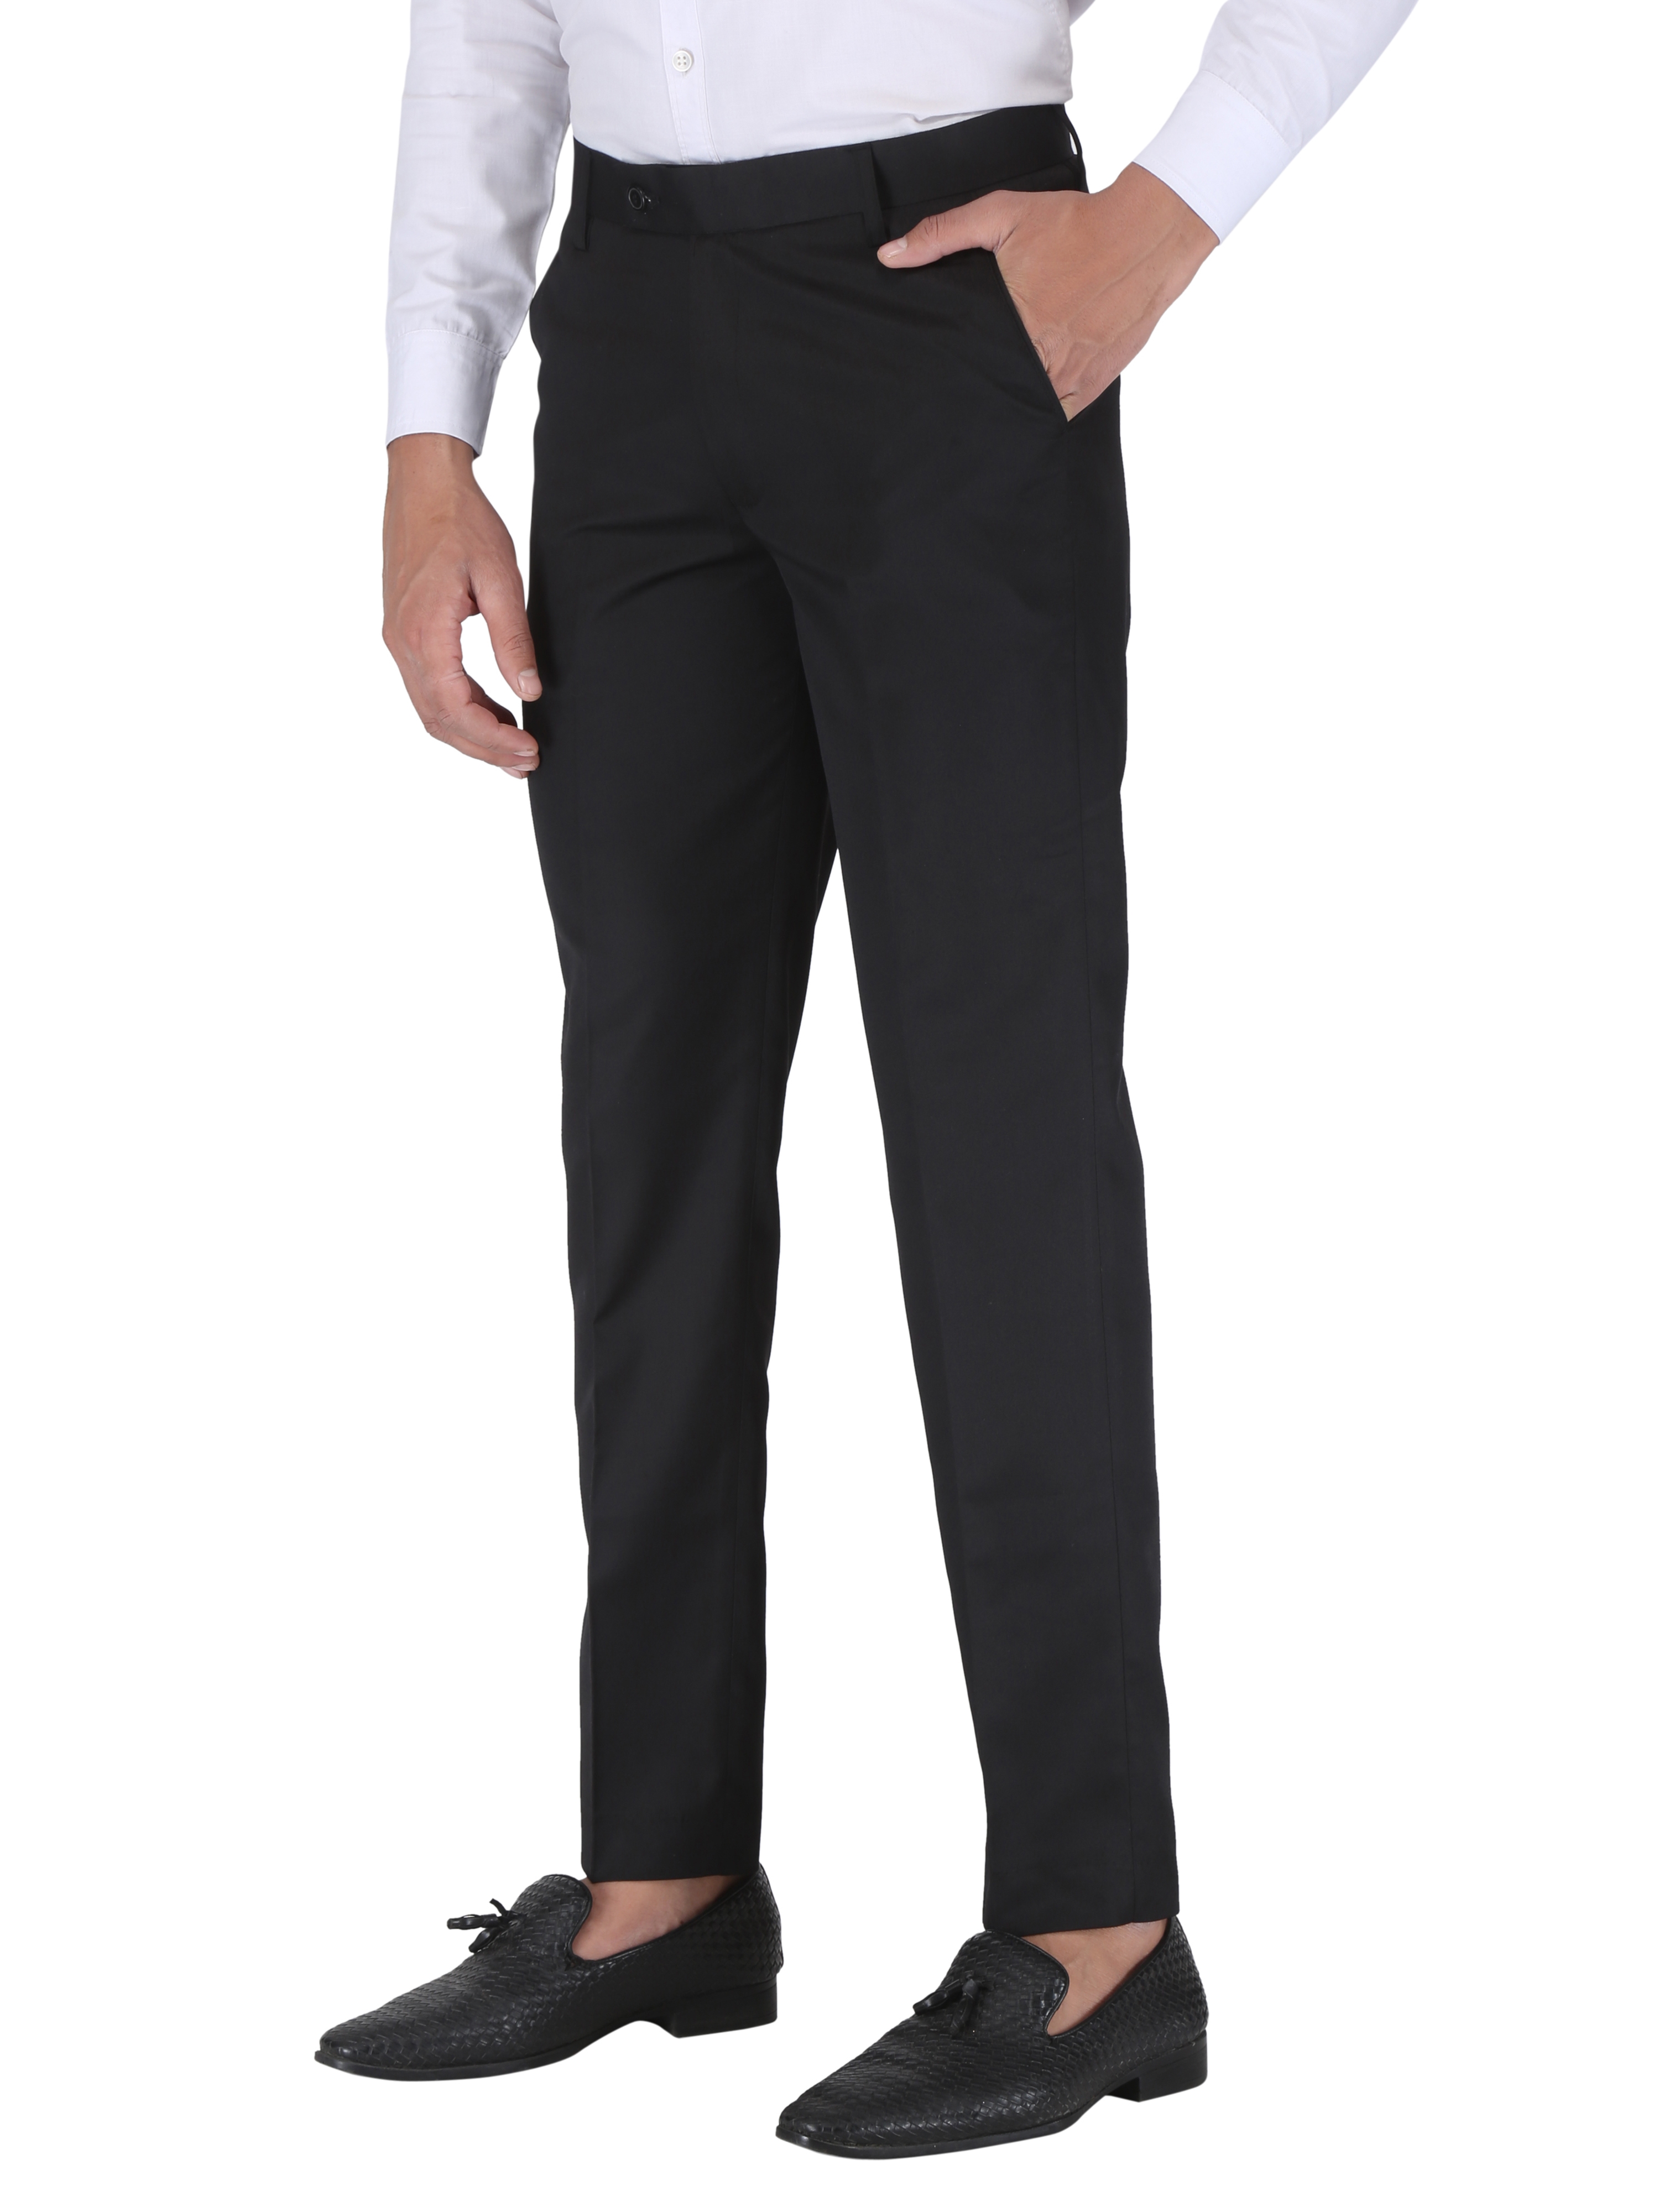 CHARLIE CARLOS | Black Men's Contemporary Reguler Leg Business Pants in Virgin PolyViscose Regular Fit Formal Trousers/Pants